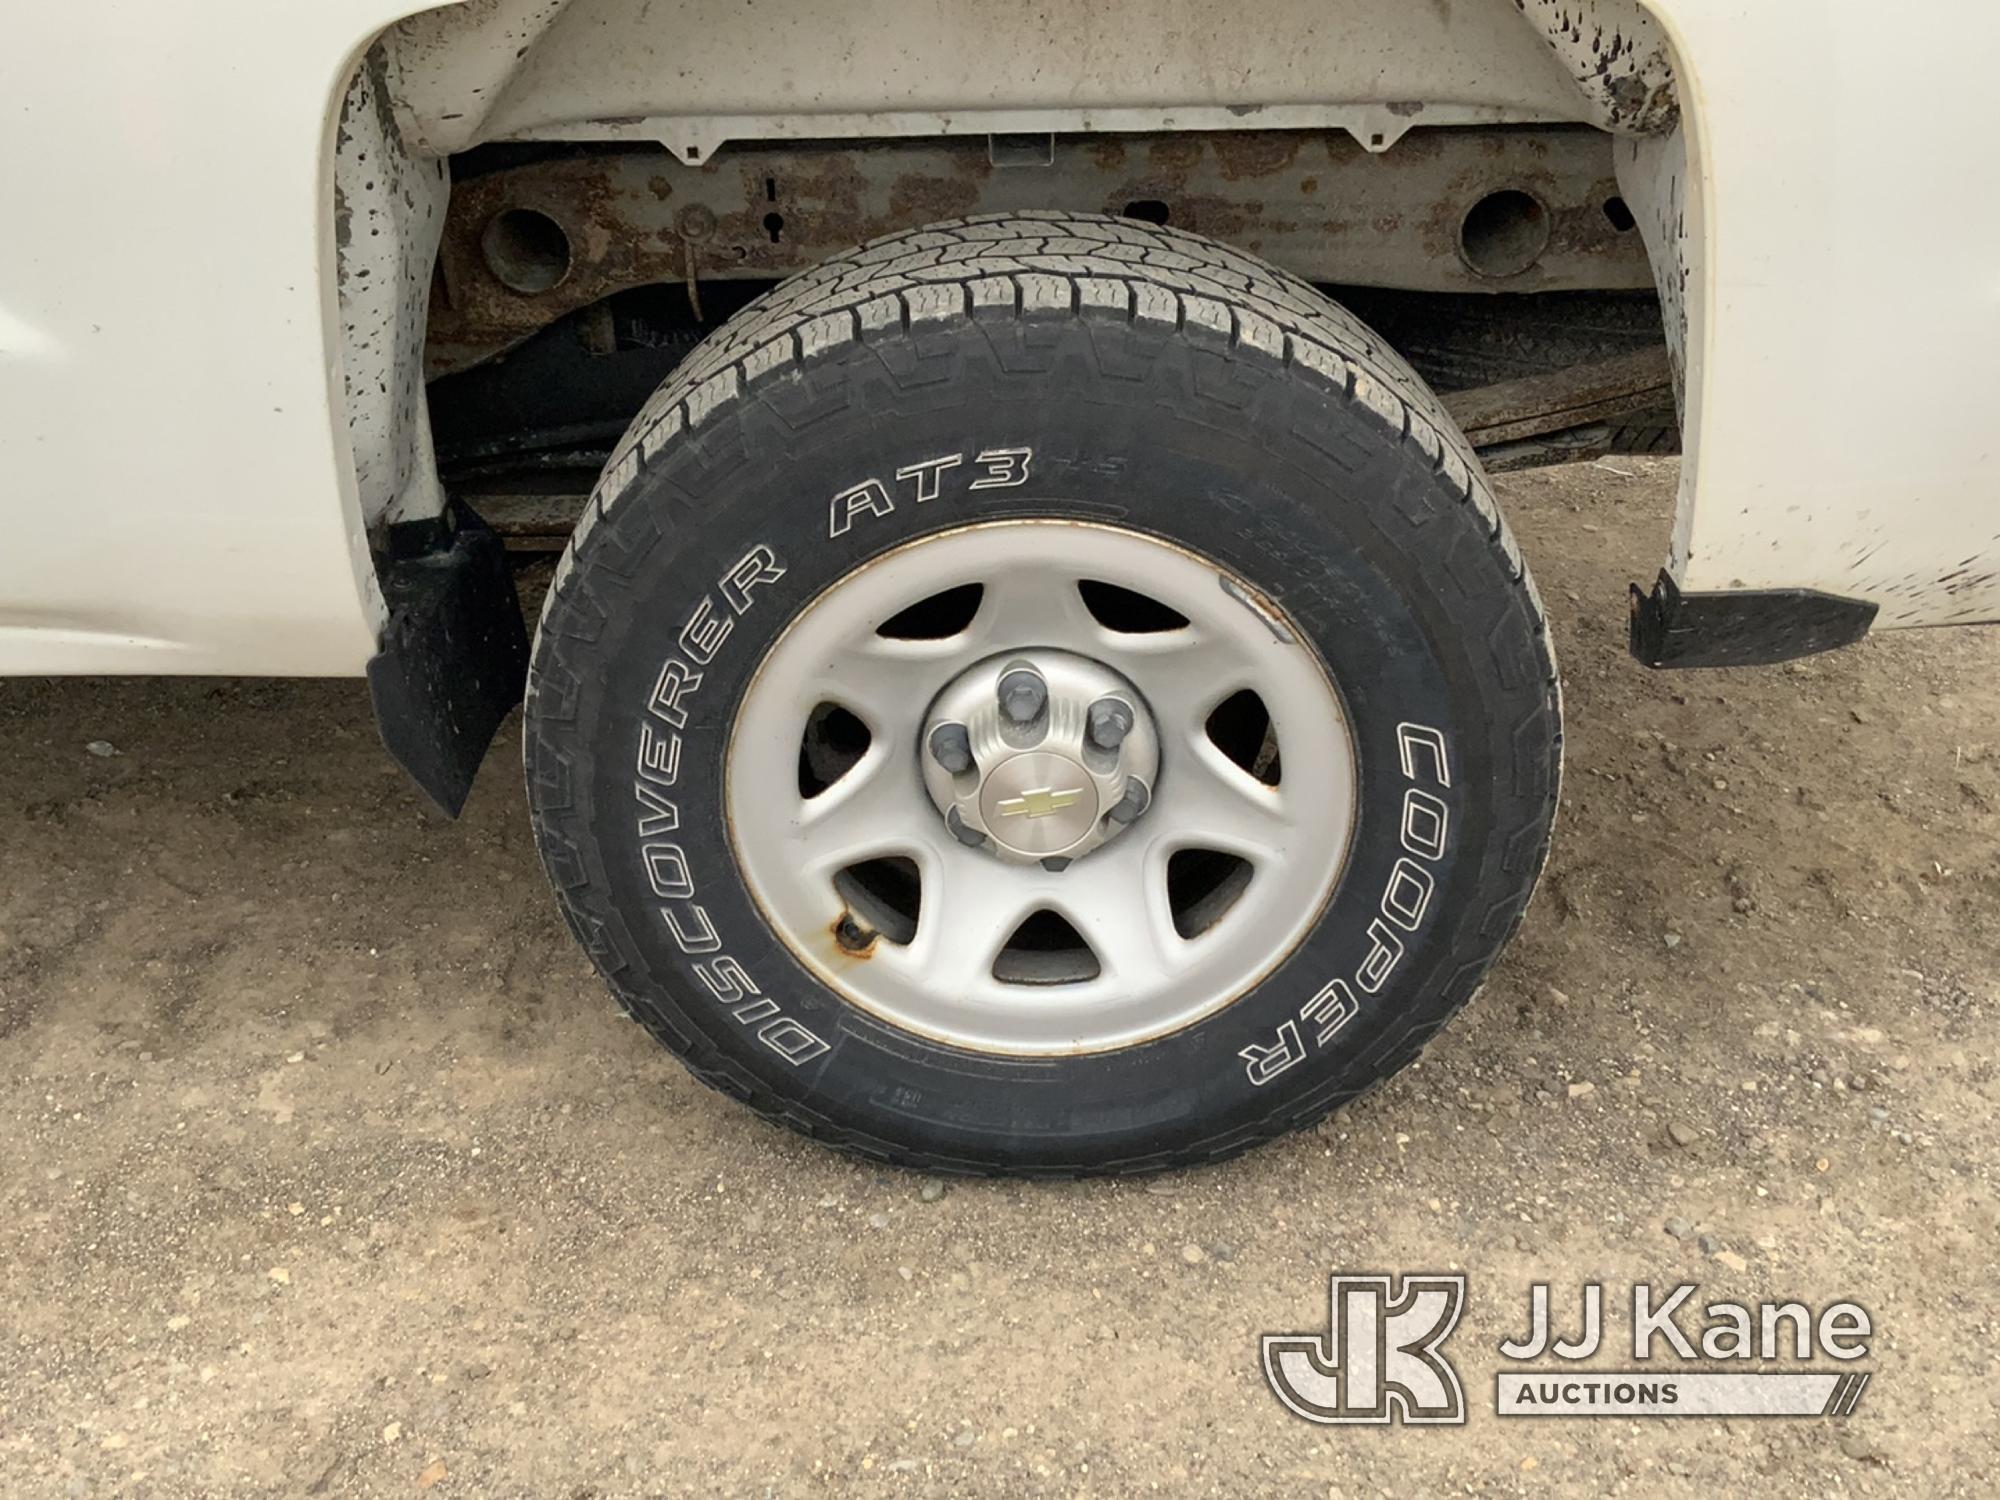 (Charlotte, MI) 2014 Chevrolet Silverado 1500 4x4 Double-Cab Pickup Truck Runs & Moves) (Rust Damage